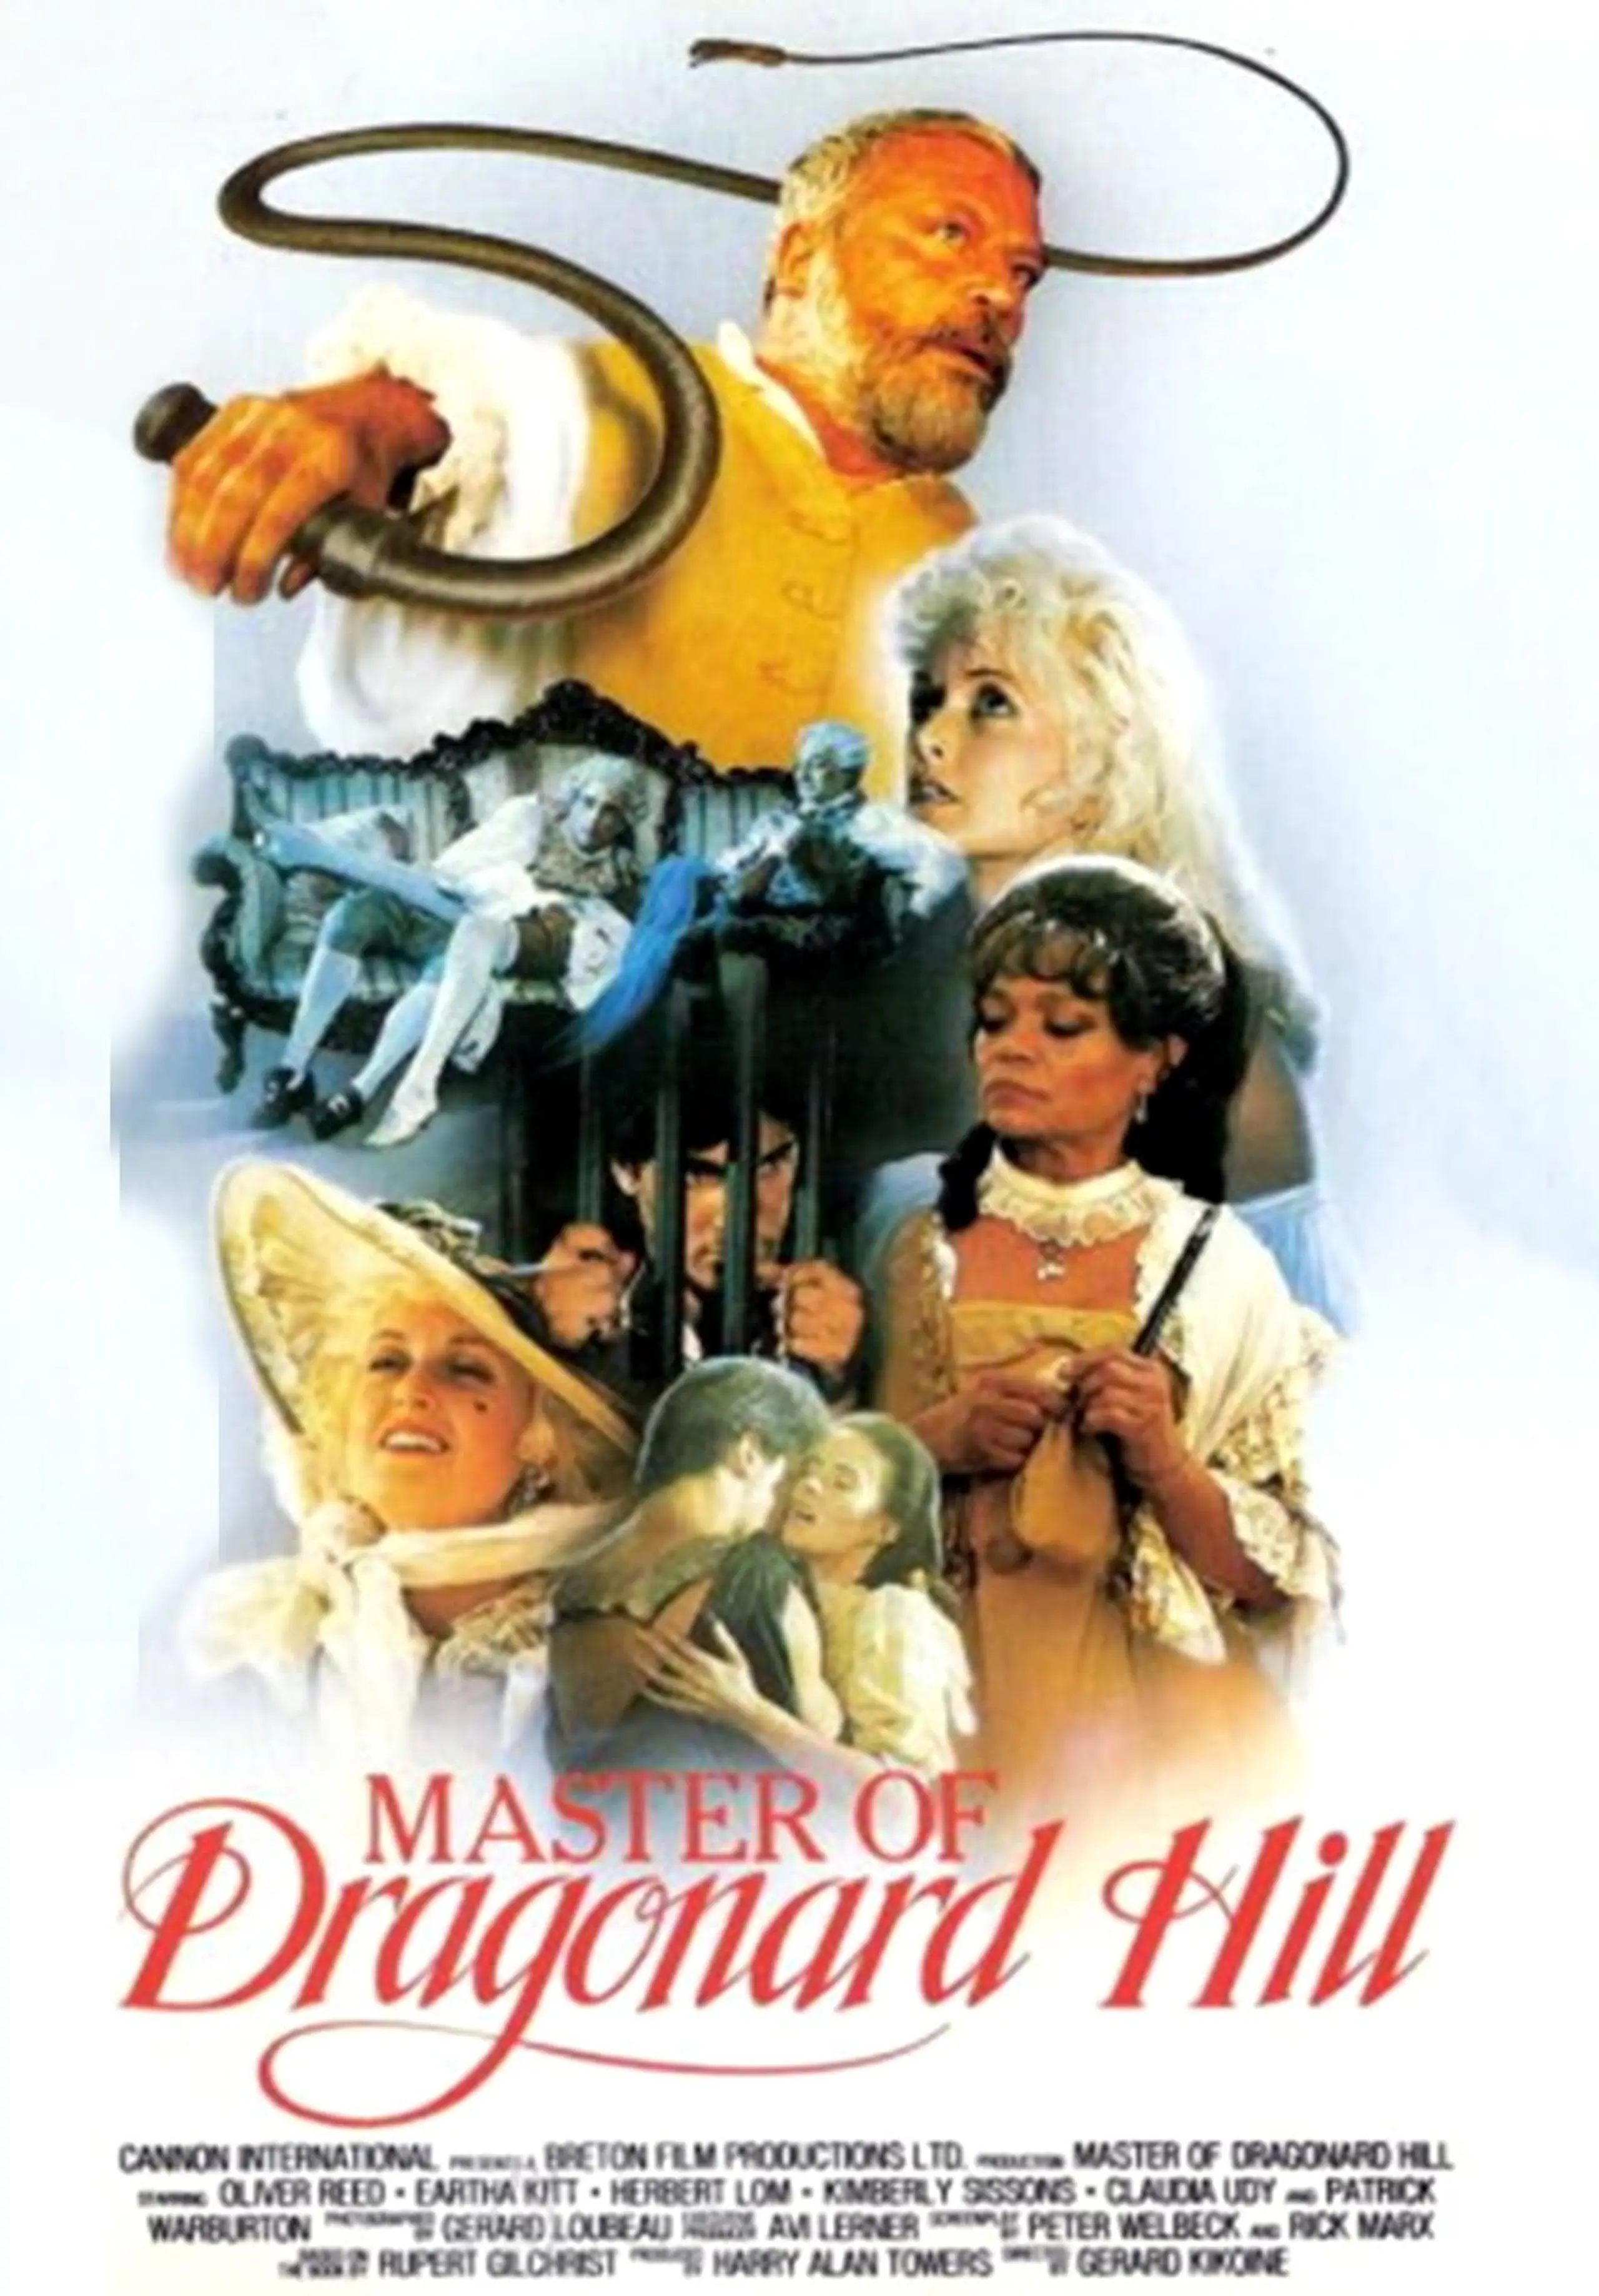 Der Herr von Dragonard Hill